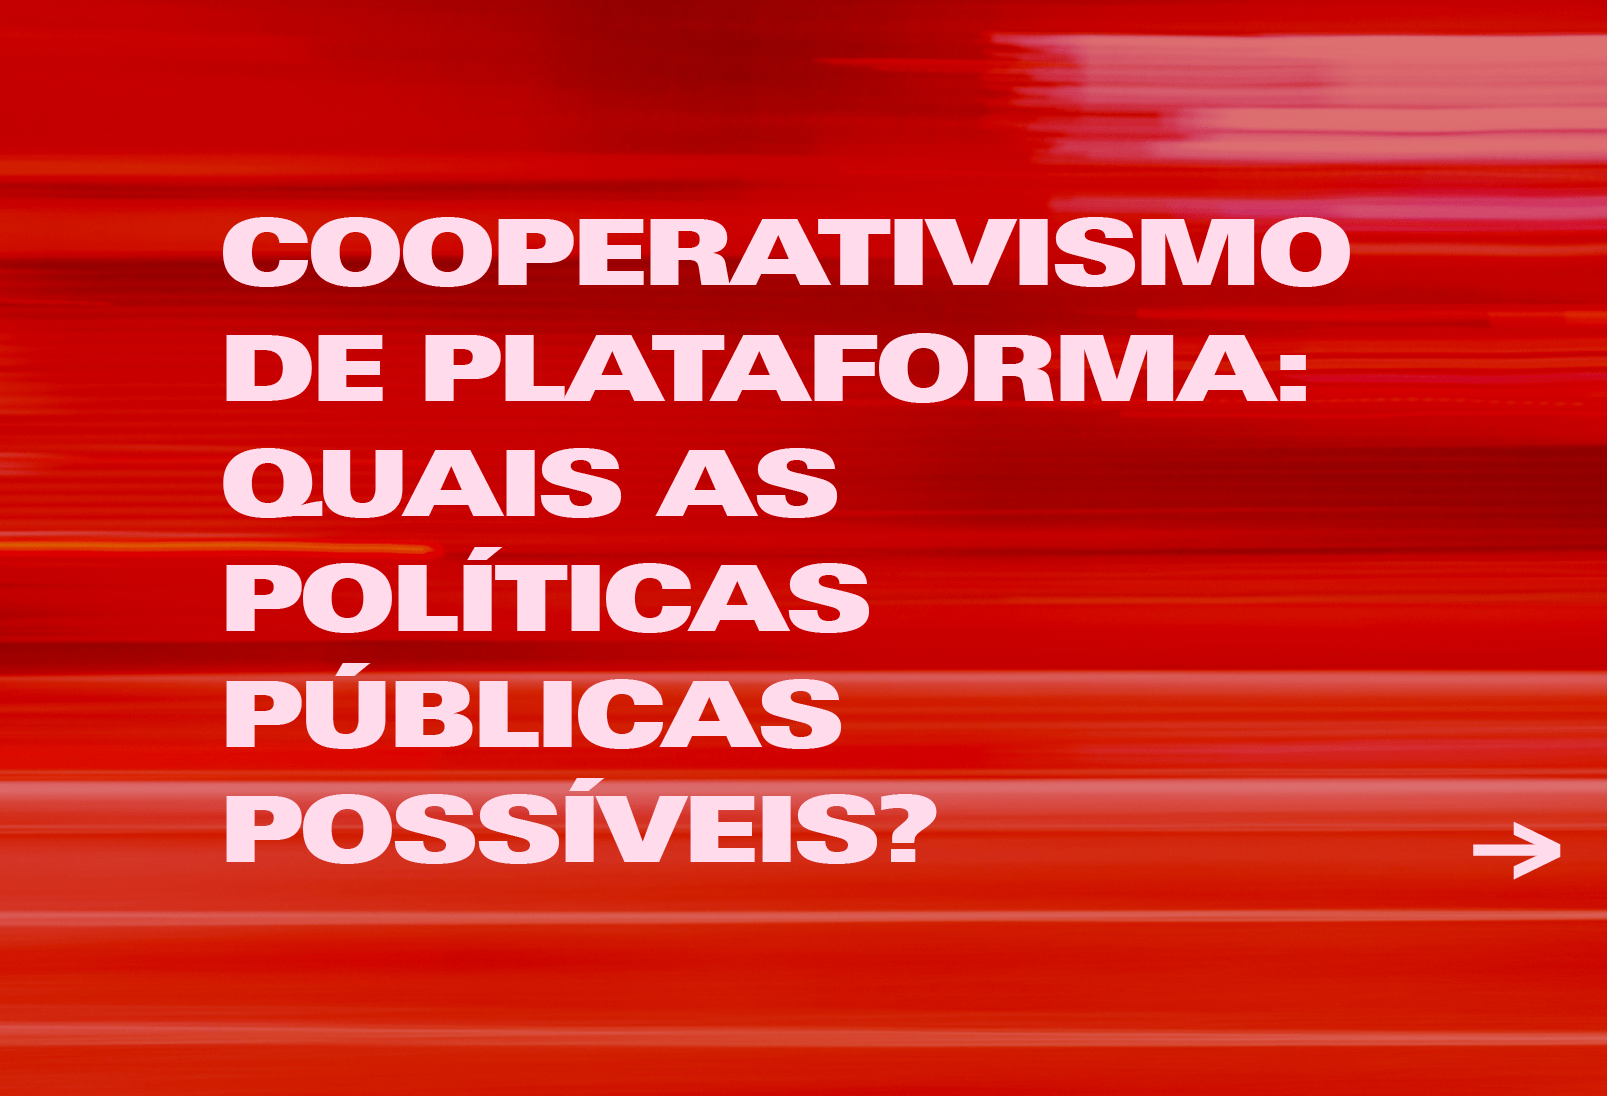 Cooperativismo de Plataforma: Quais as Políticas Públicas Possíveis?